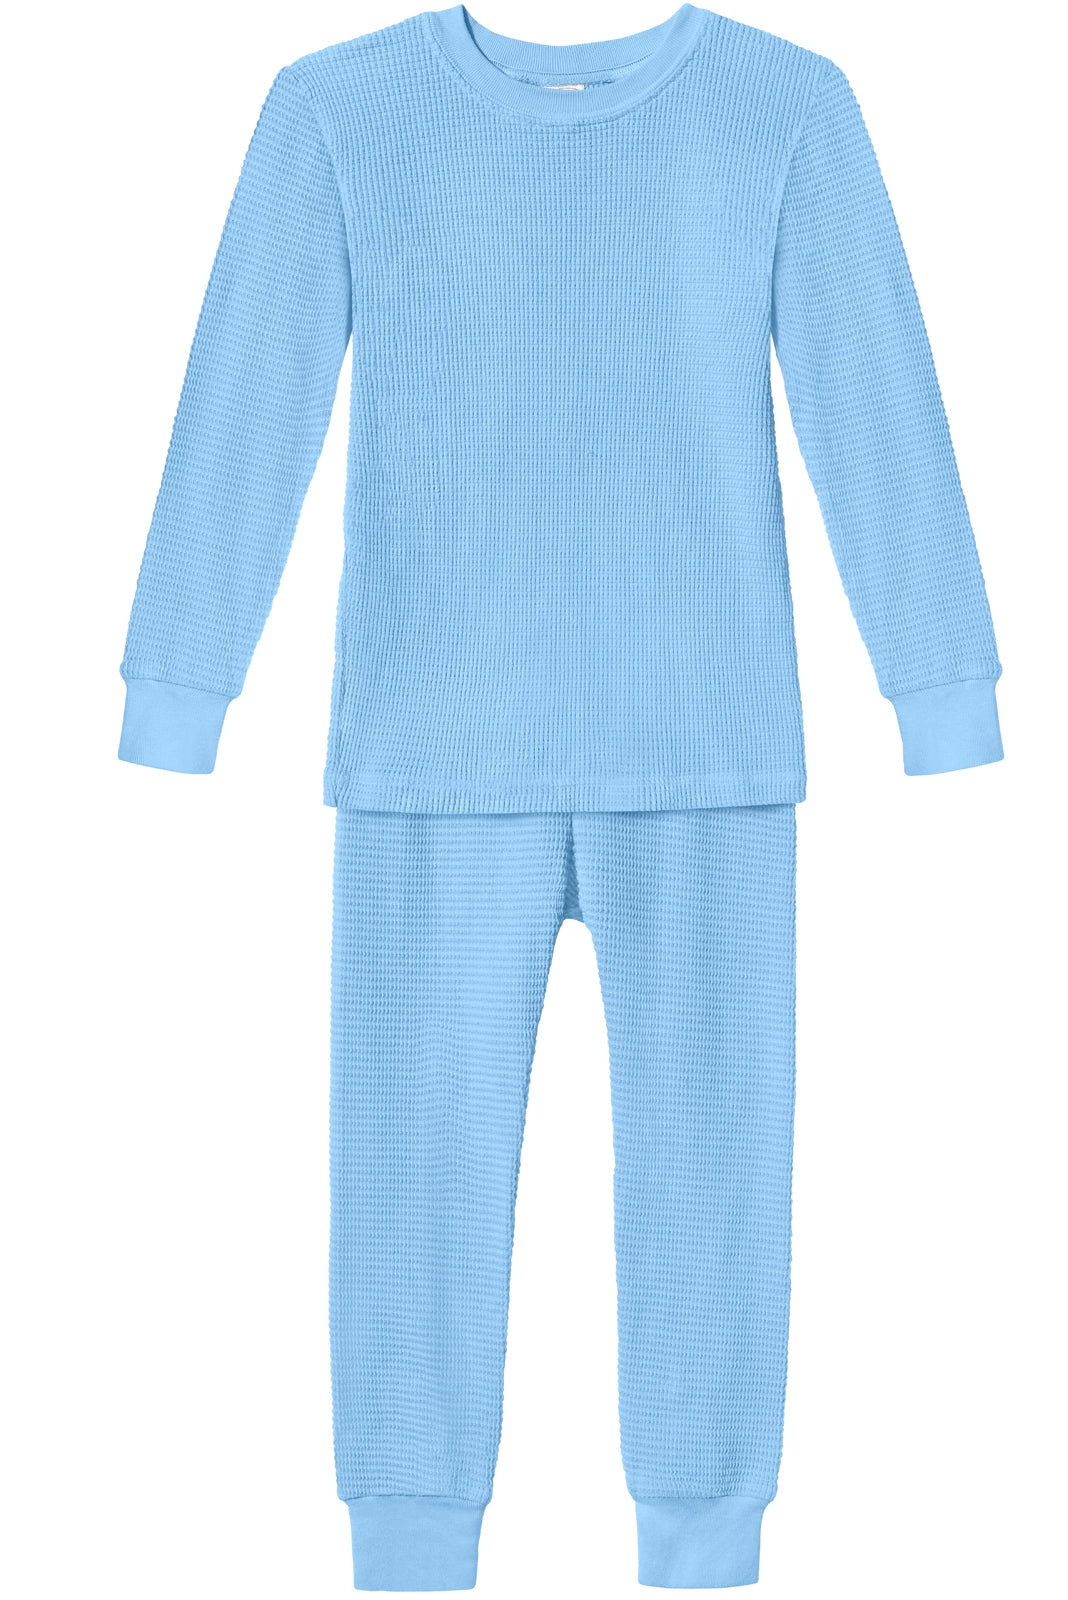 Children's thermal underwear Meteor 128-134 cm blue Blue \ 128